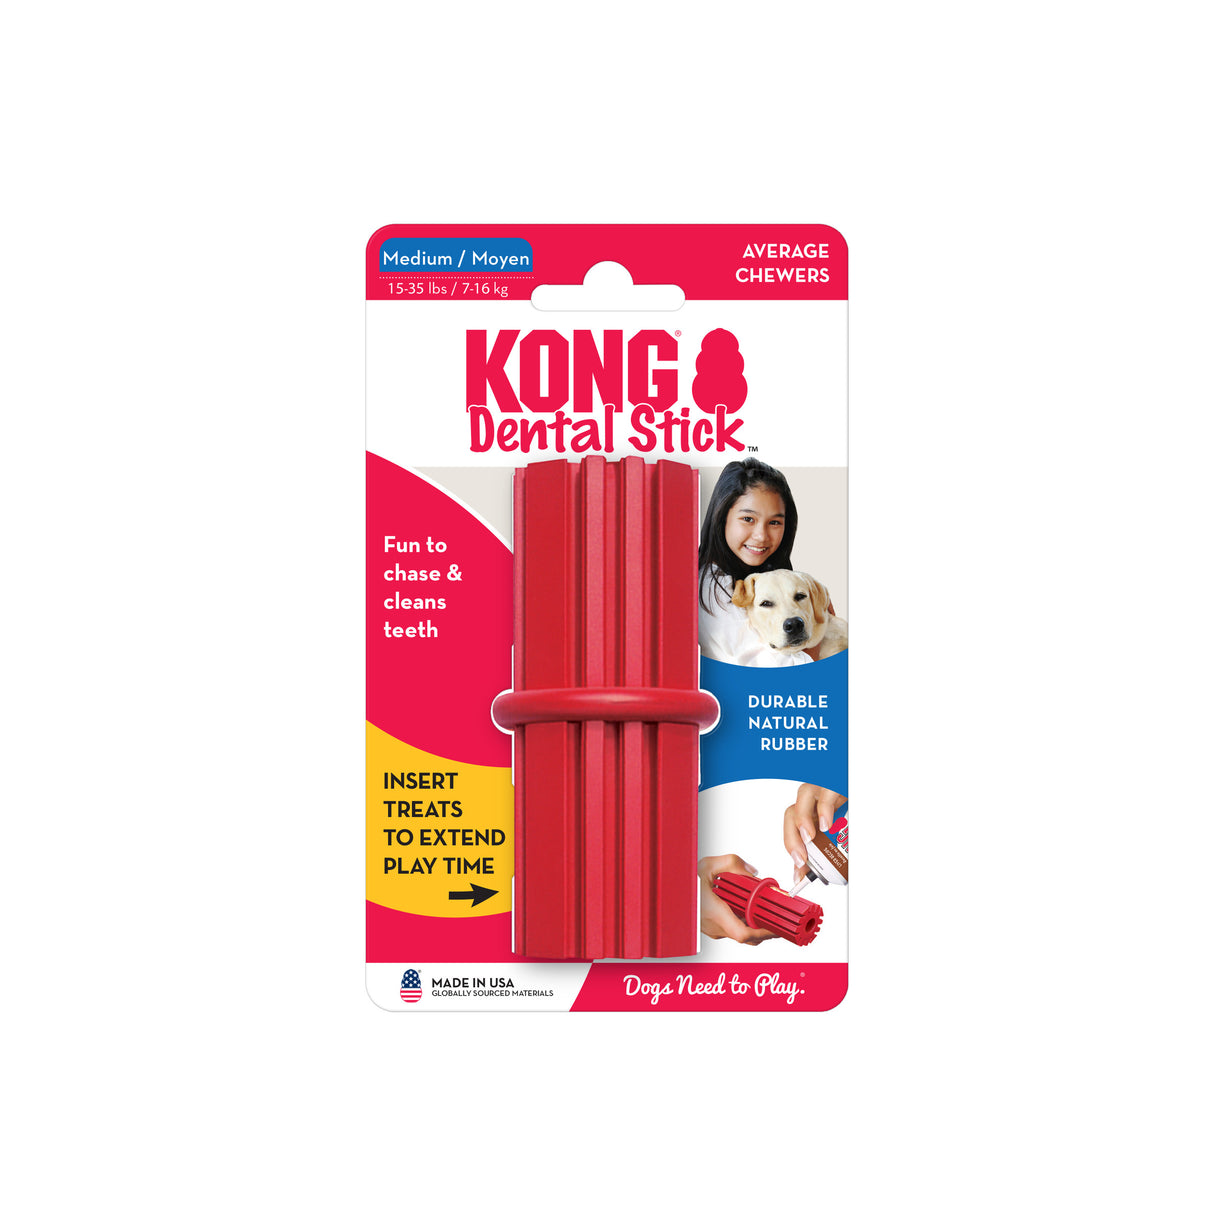 KONG Dental Stick #size_m